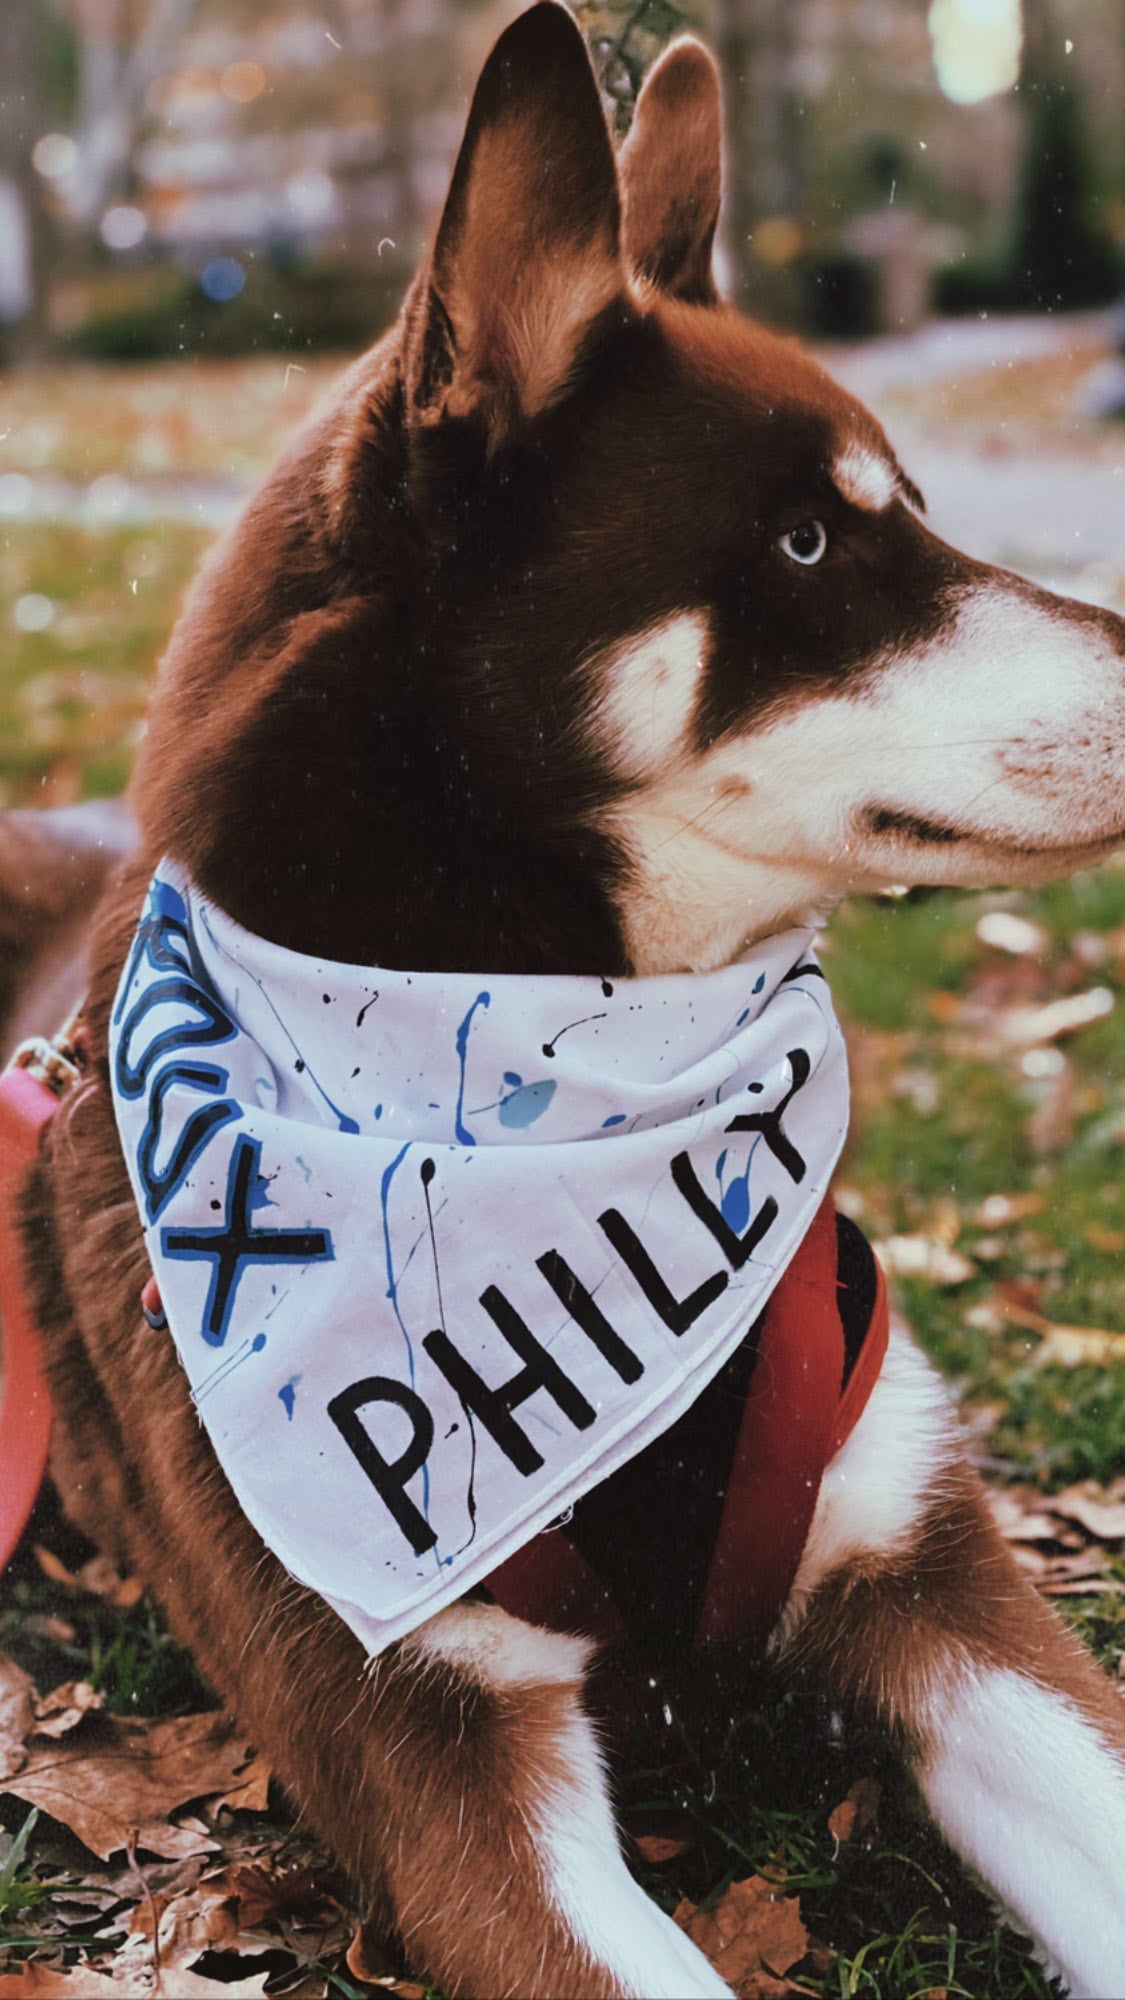 Philly Dog white bandana